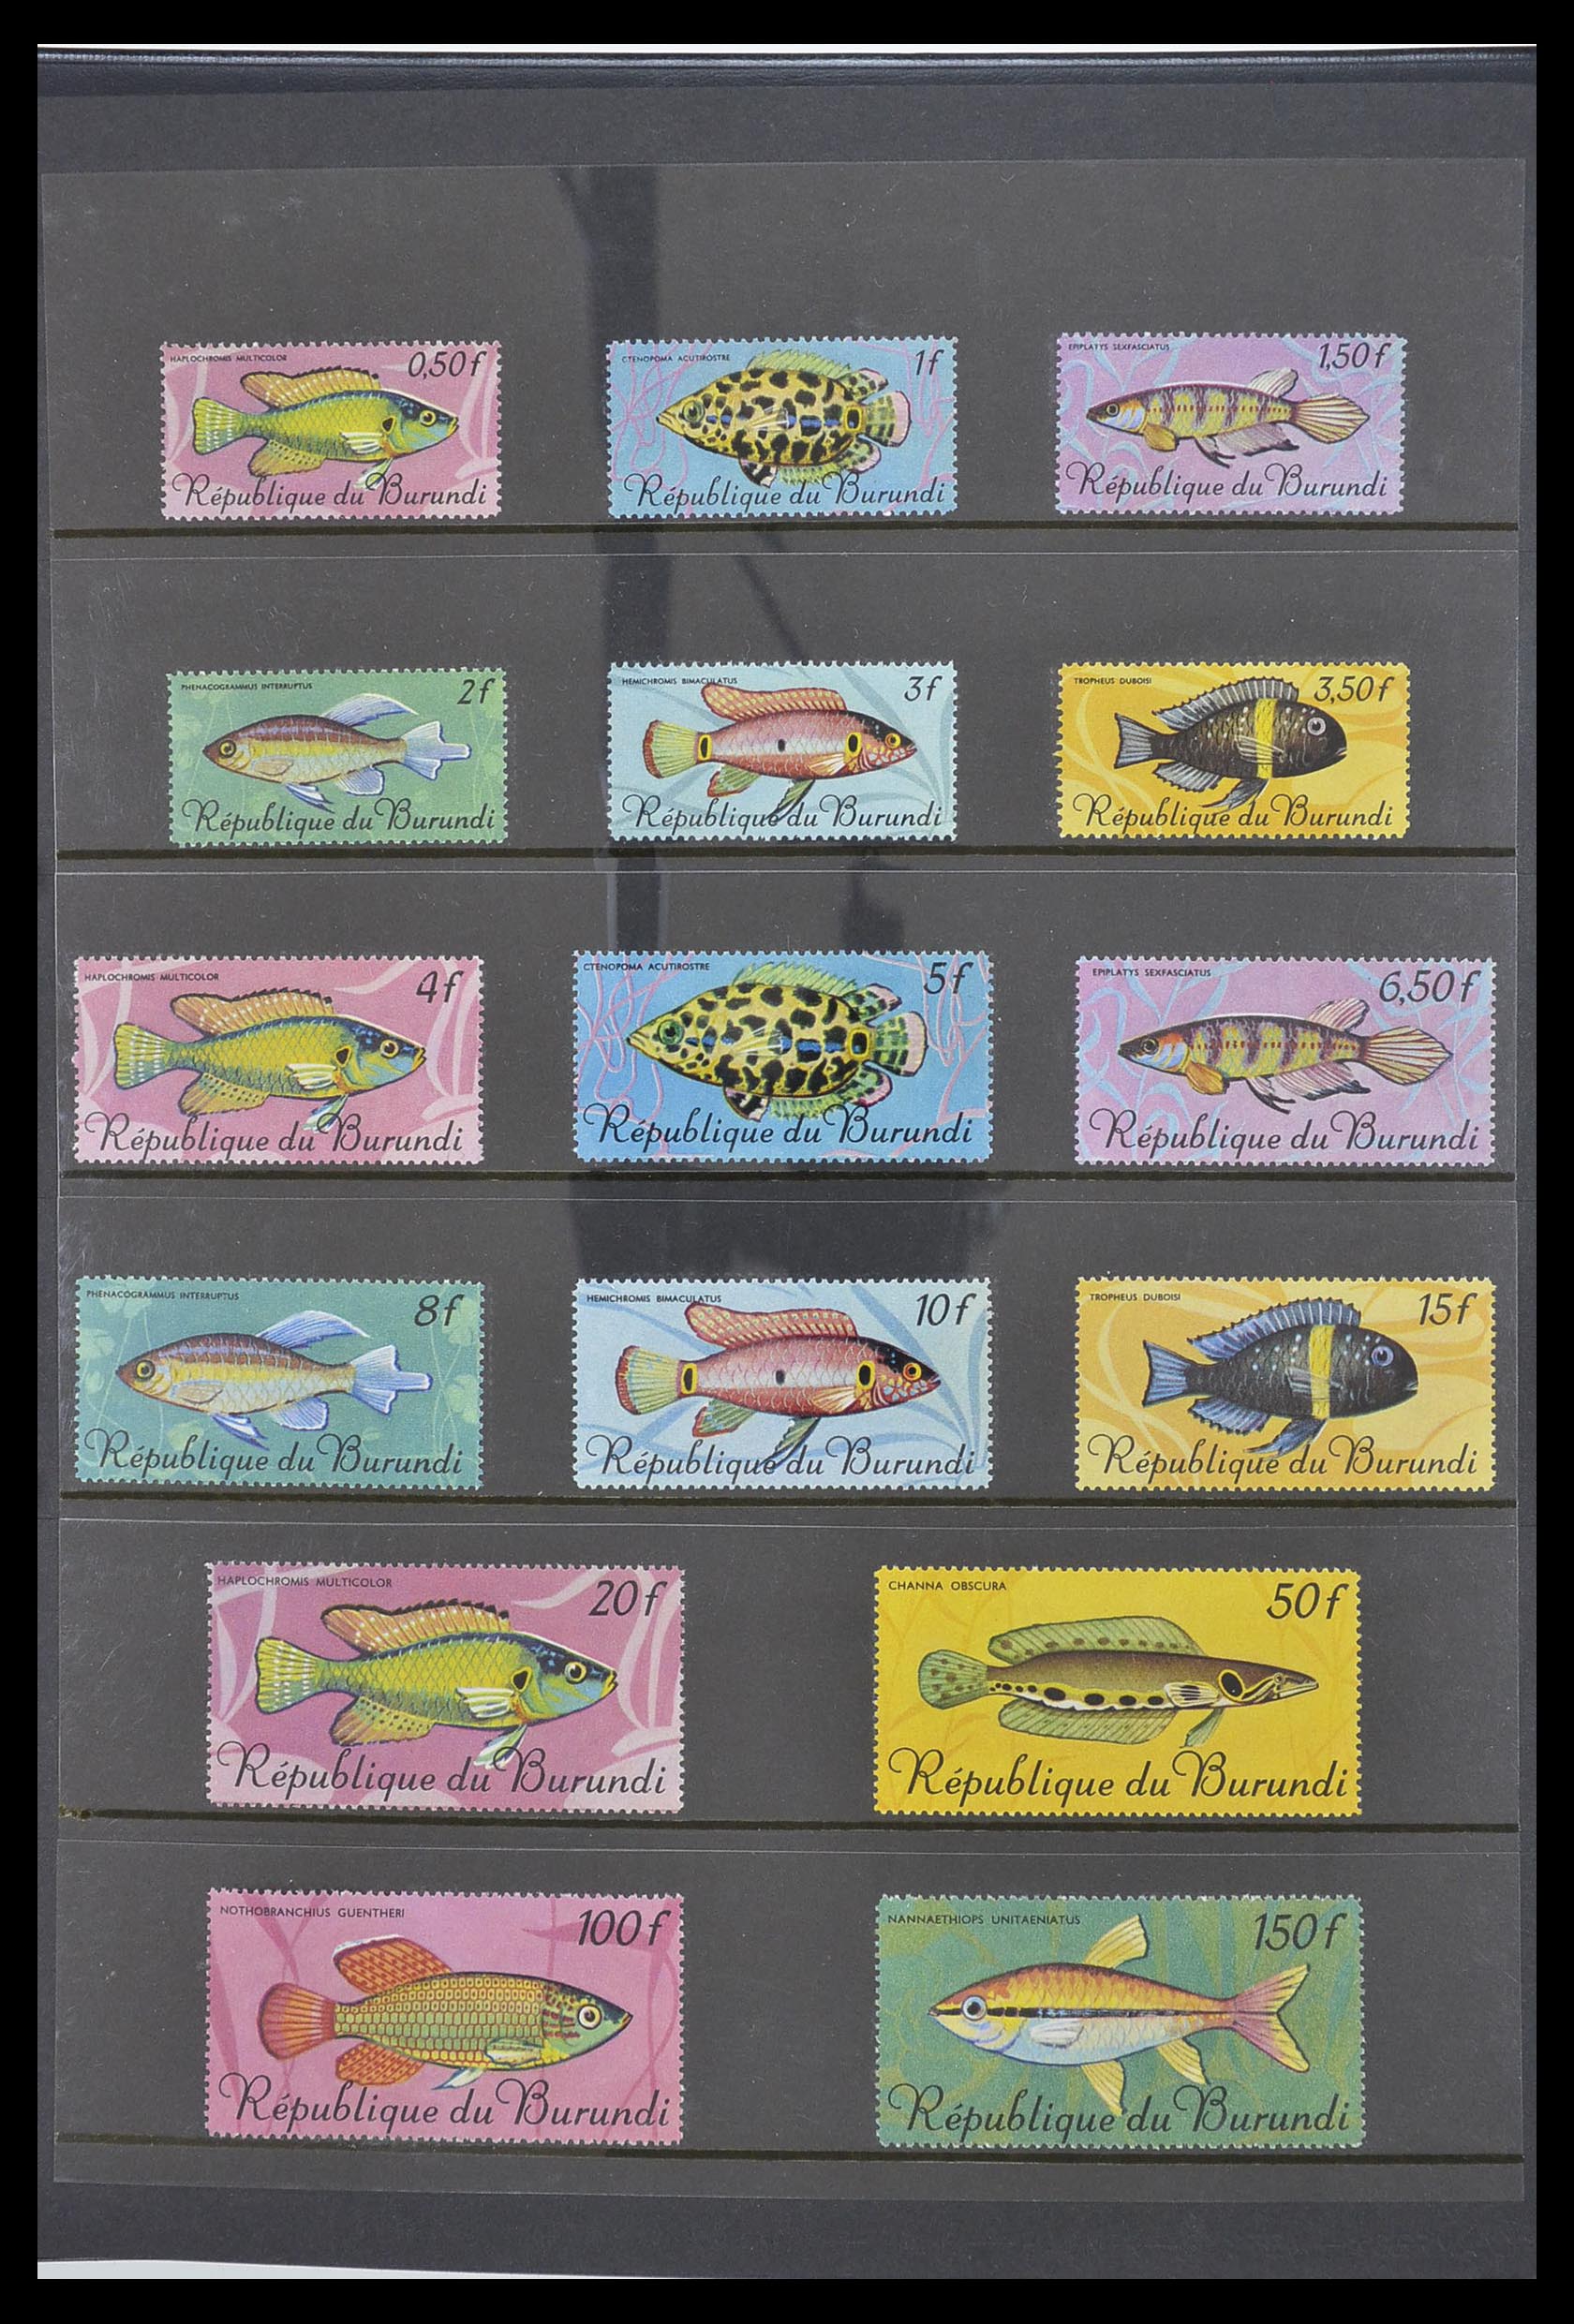 33764 077 - Stamp collection 33764 Burundi 1962-2004.